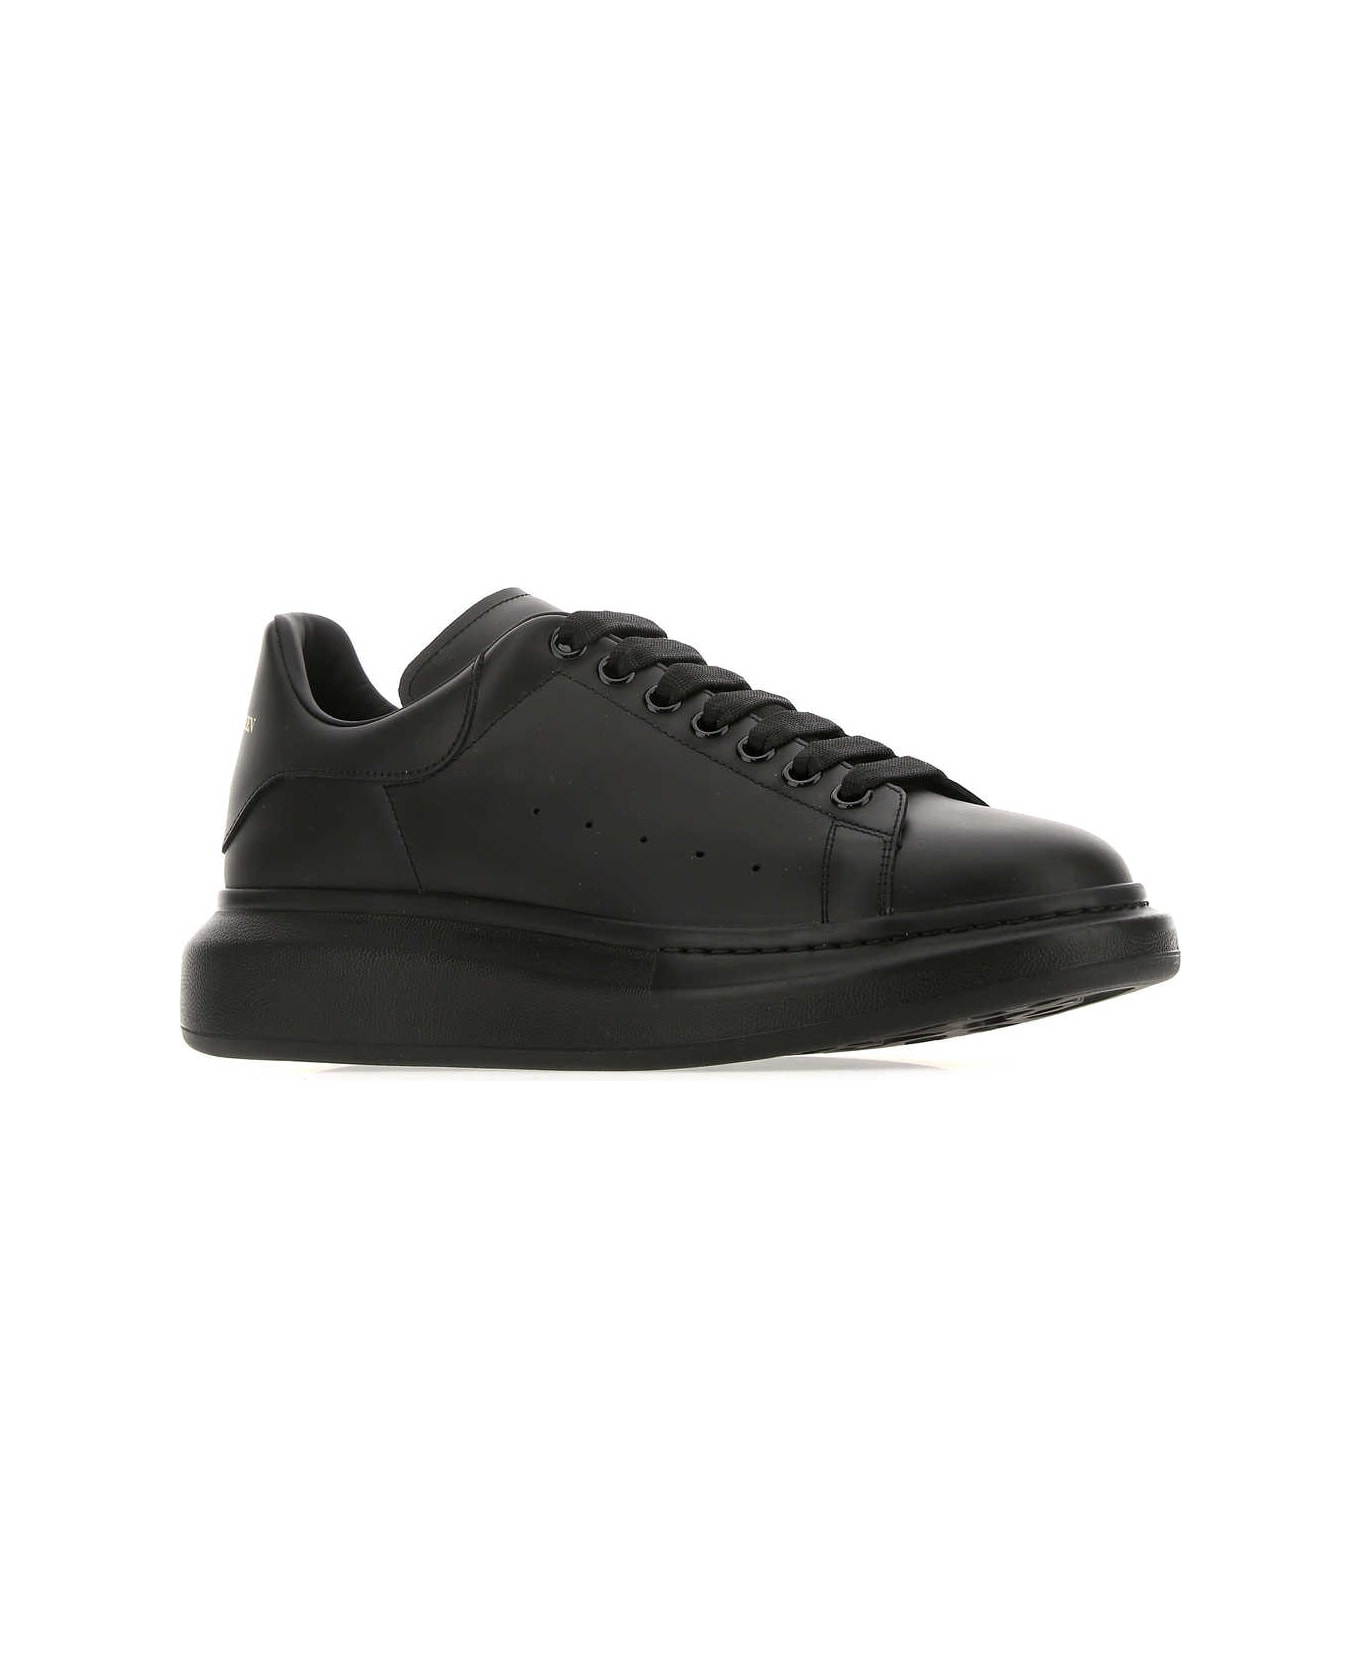 Alexander McQueen Black Leather Sneakers - 1000